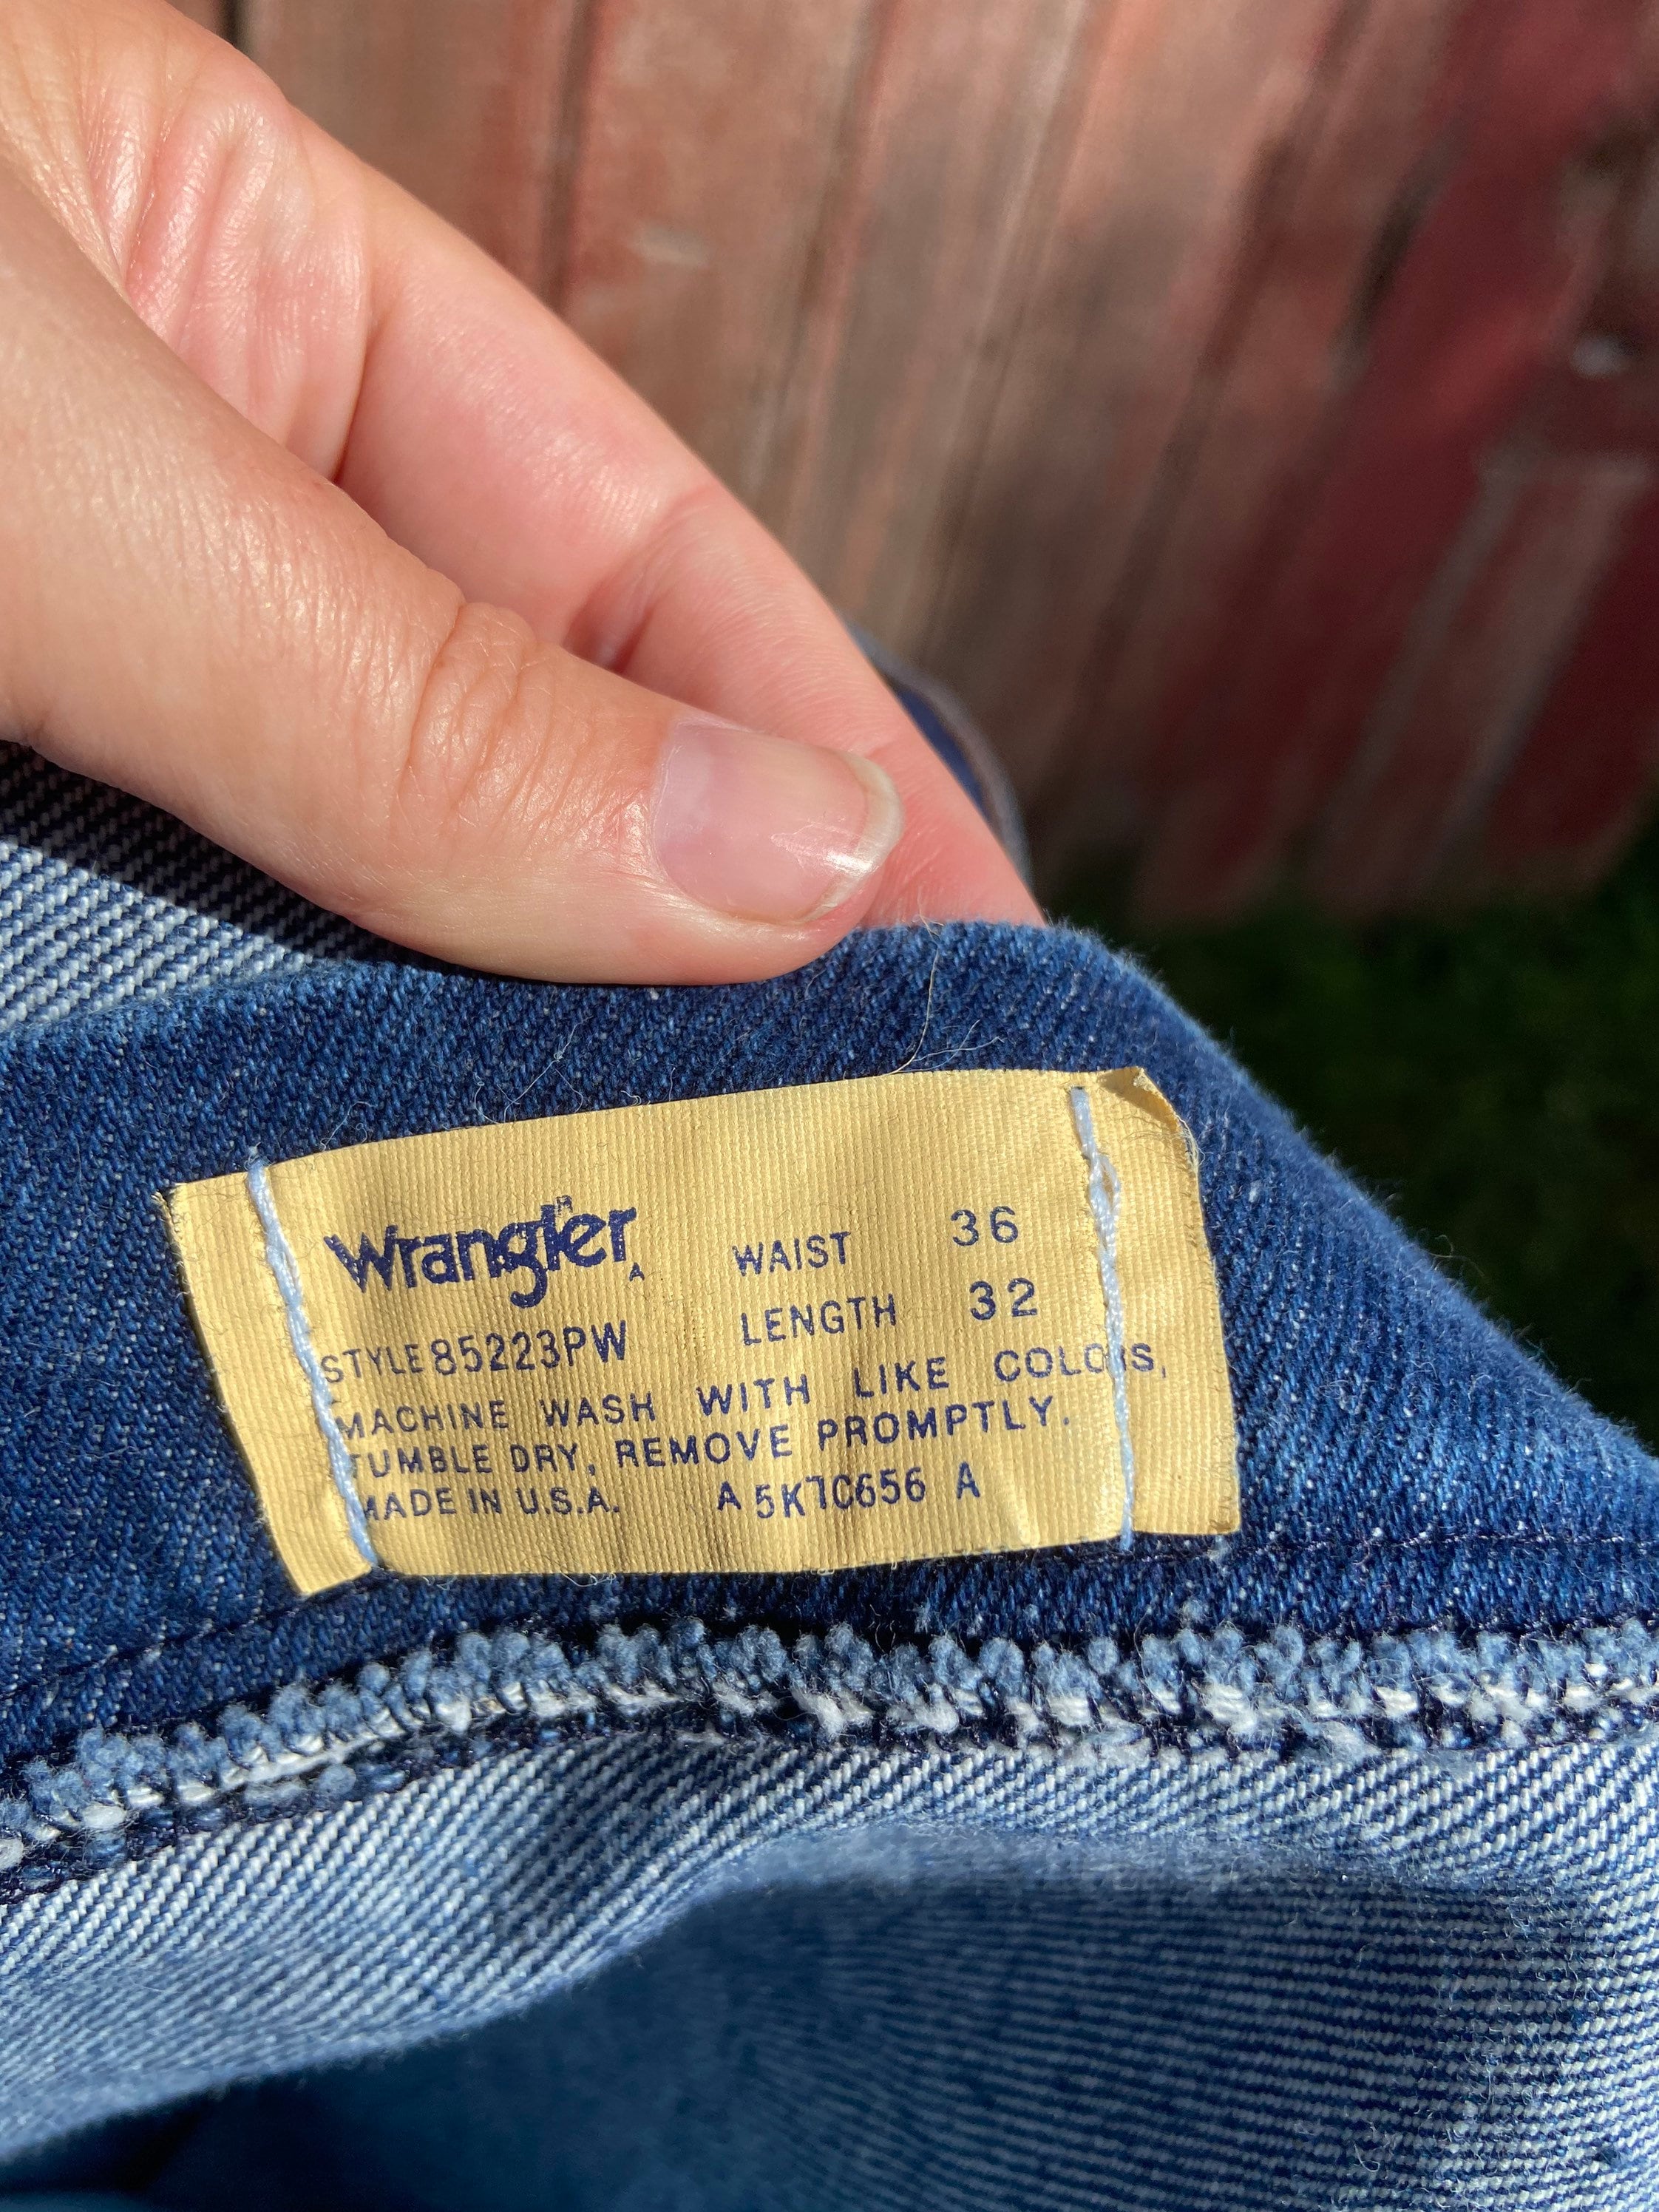 80's Wrangler Tag Still on Jeans - Etsy Israel